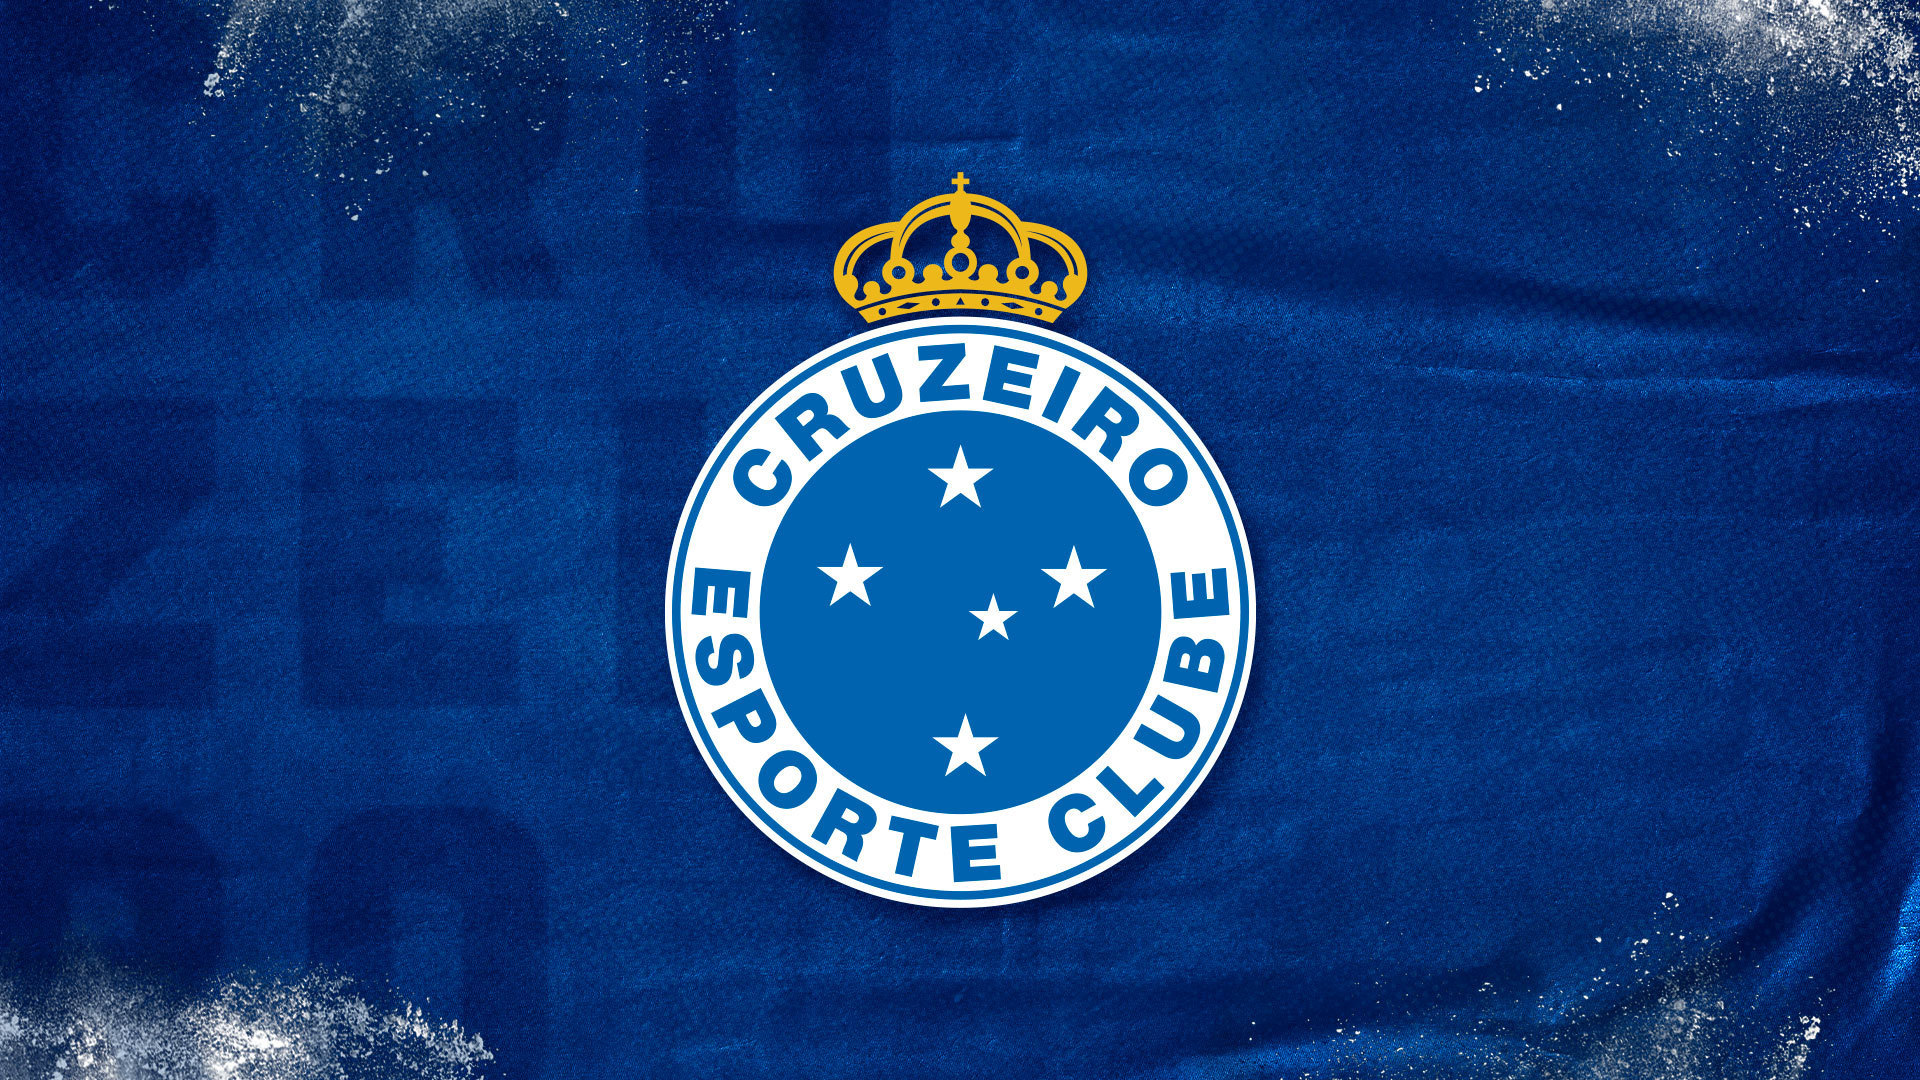 Clubes do Cruzeiro, Convênios